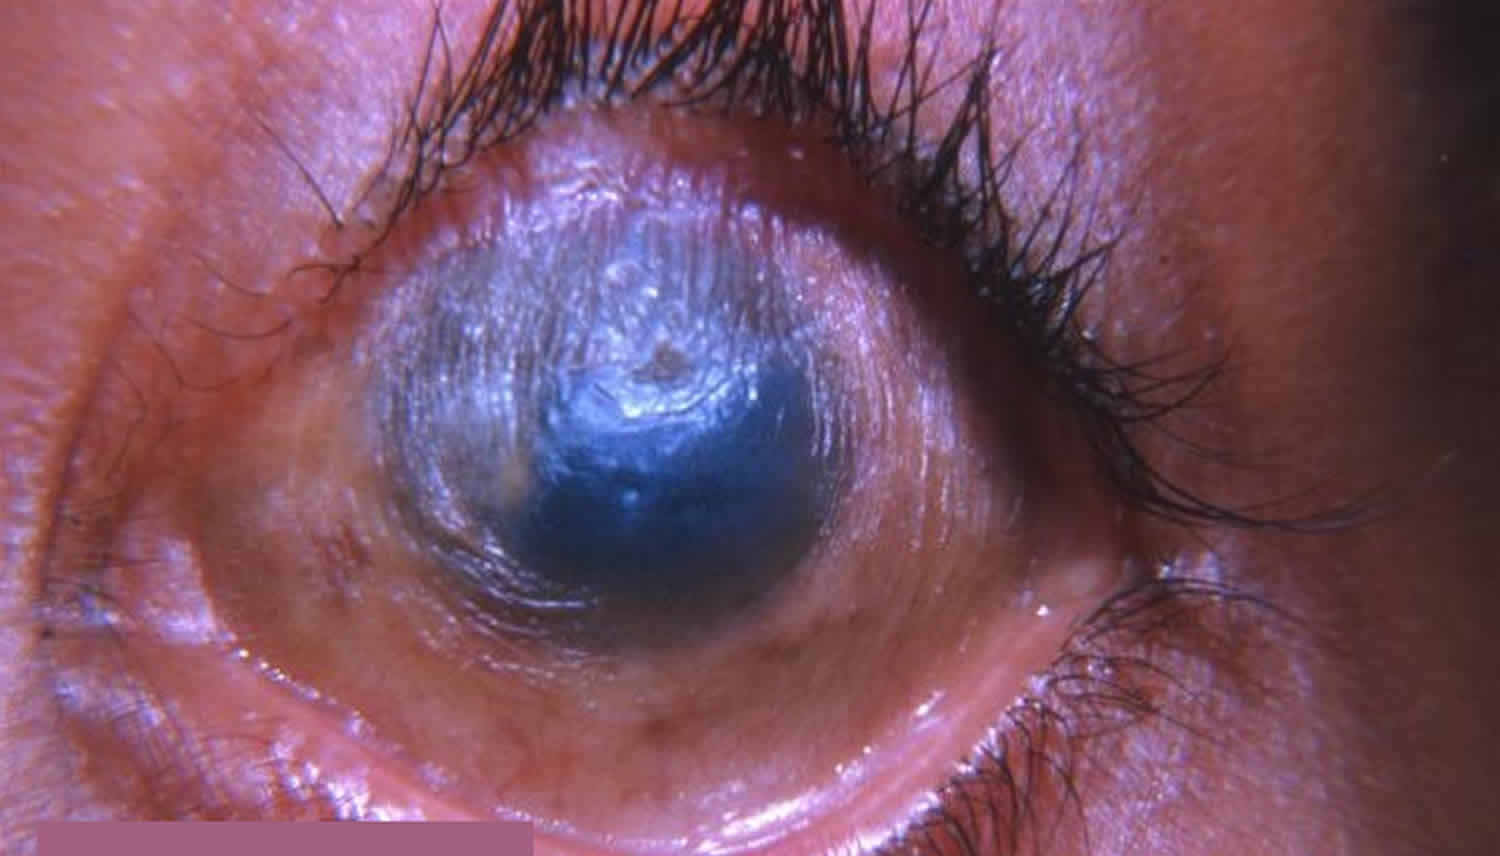 Эрозия роговицы глаза: причины, симптомы, лечение, случаи в жизни